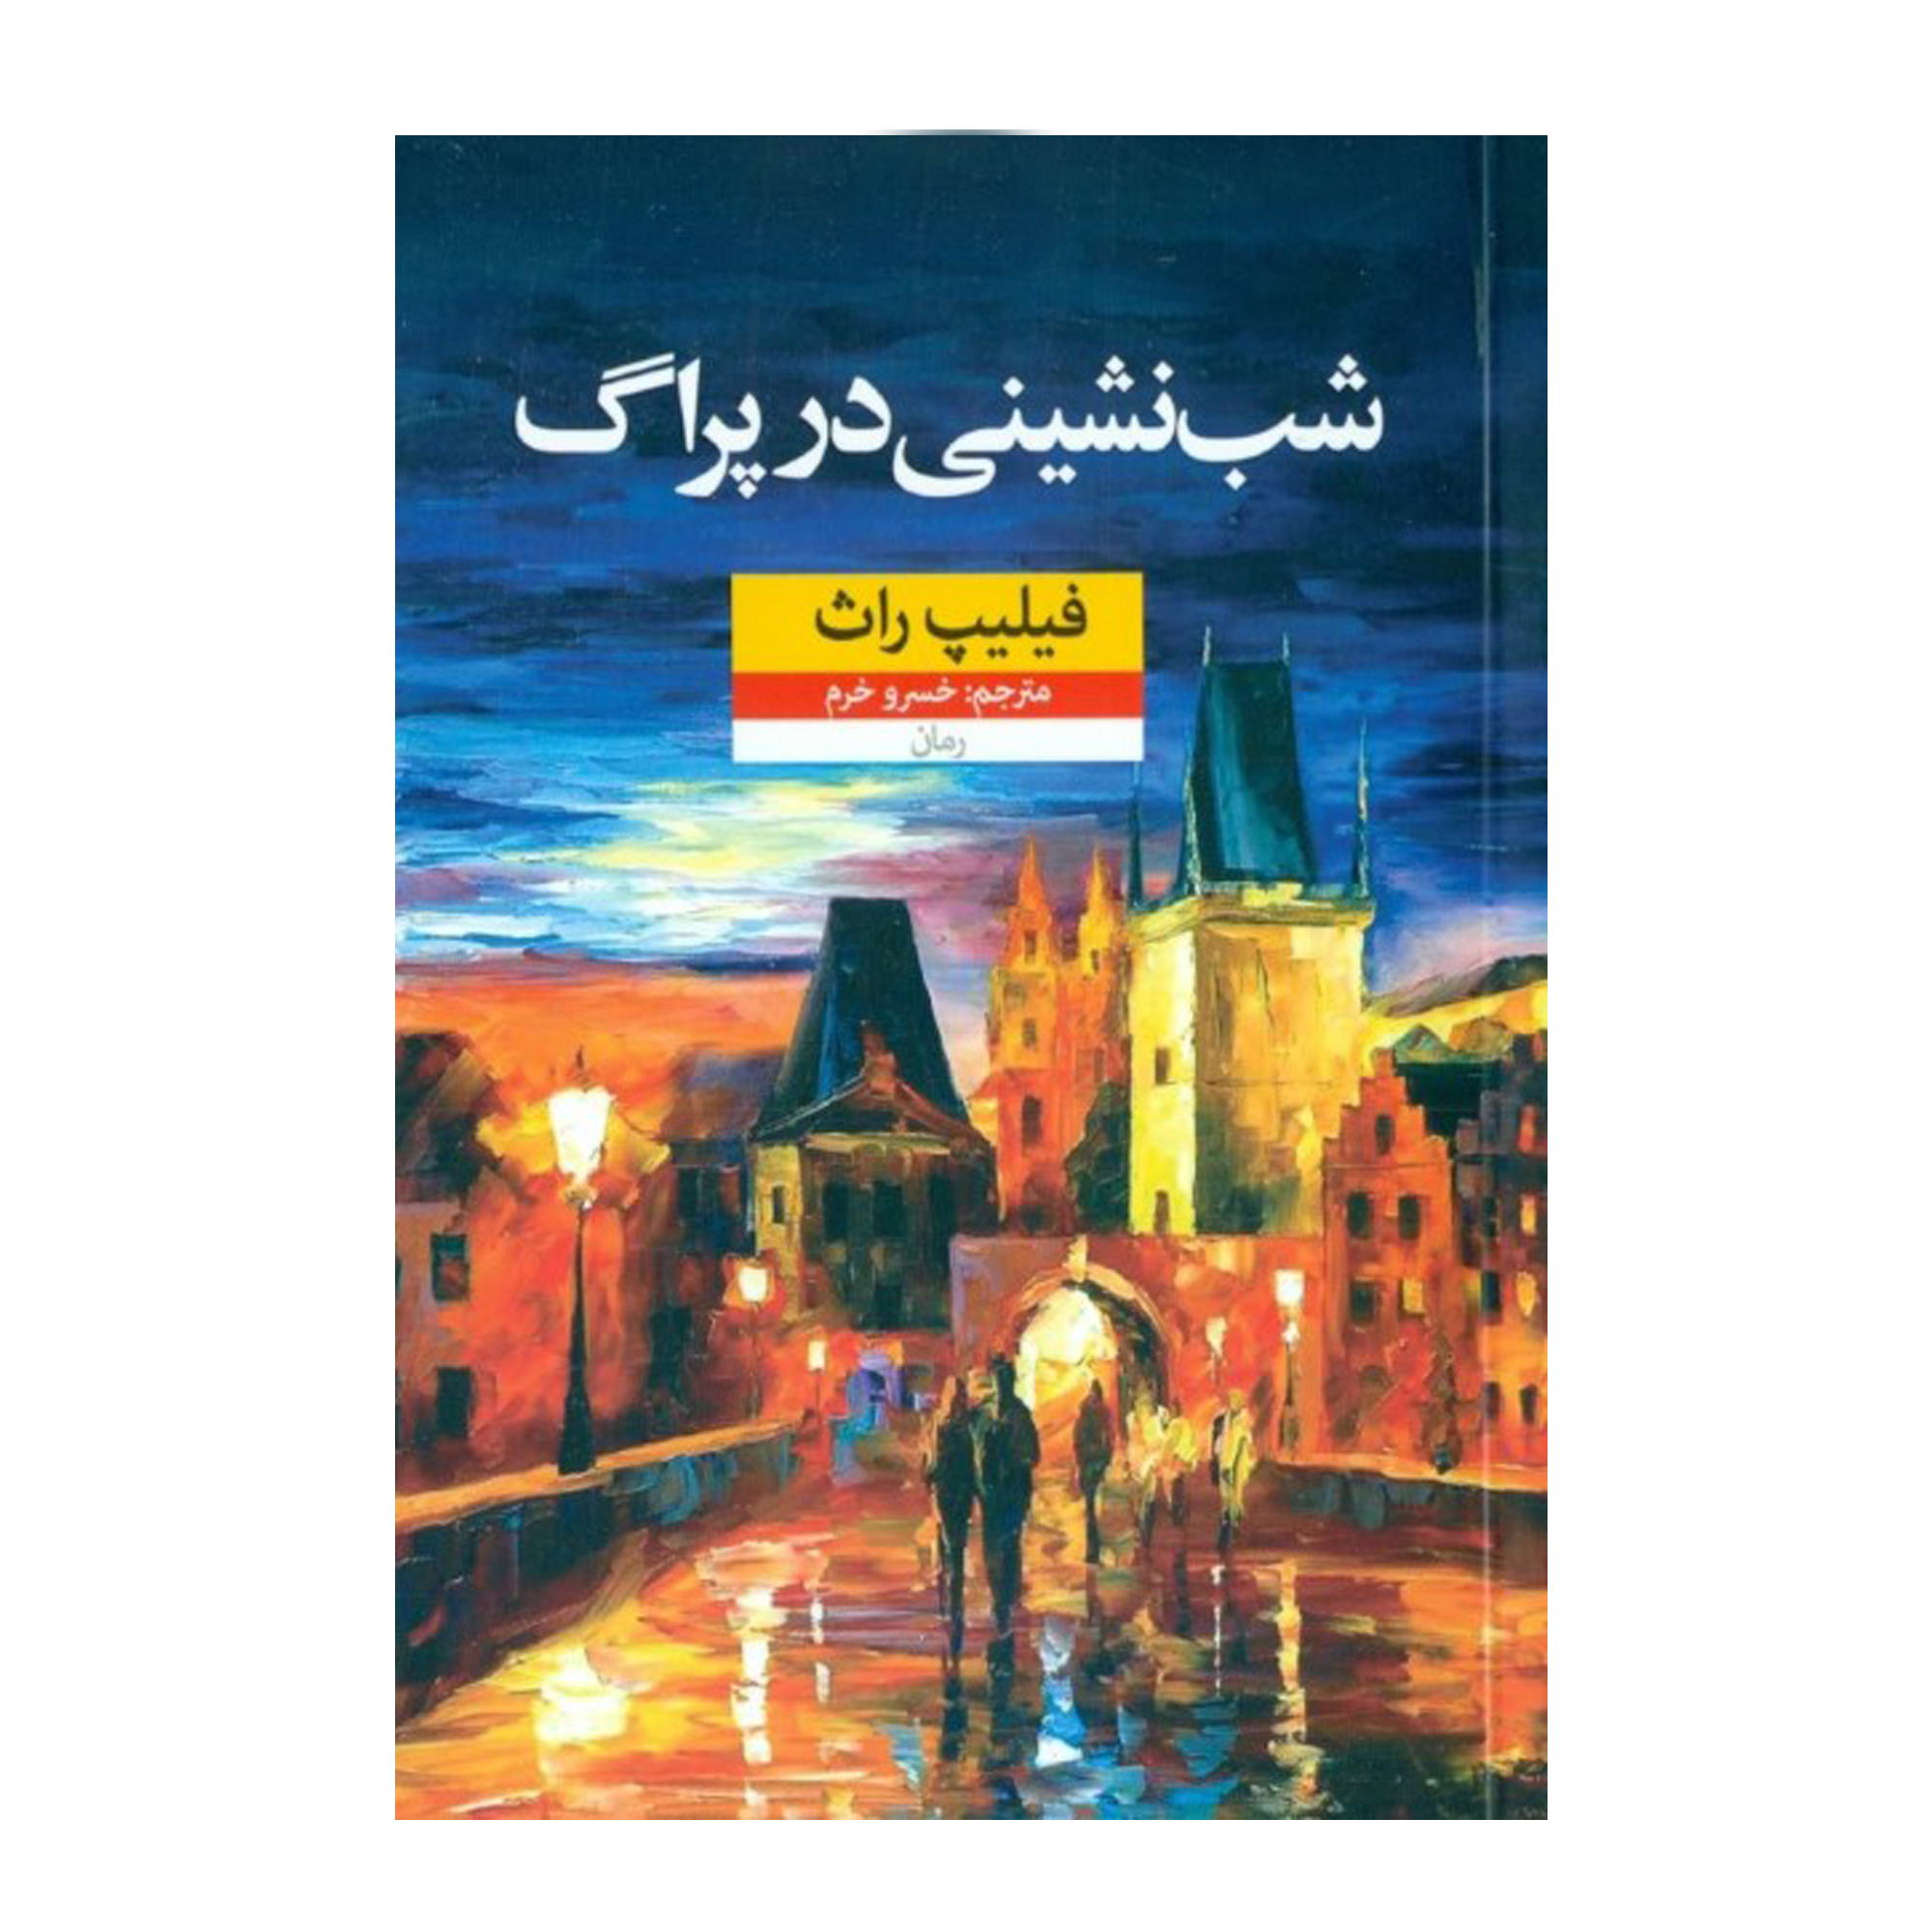 كتاب شب نشيني در پراگ اثر فيليپ راث نشر نون